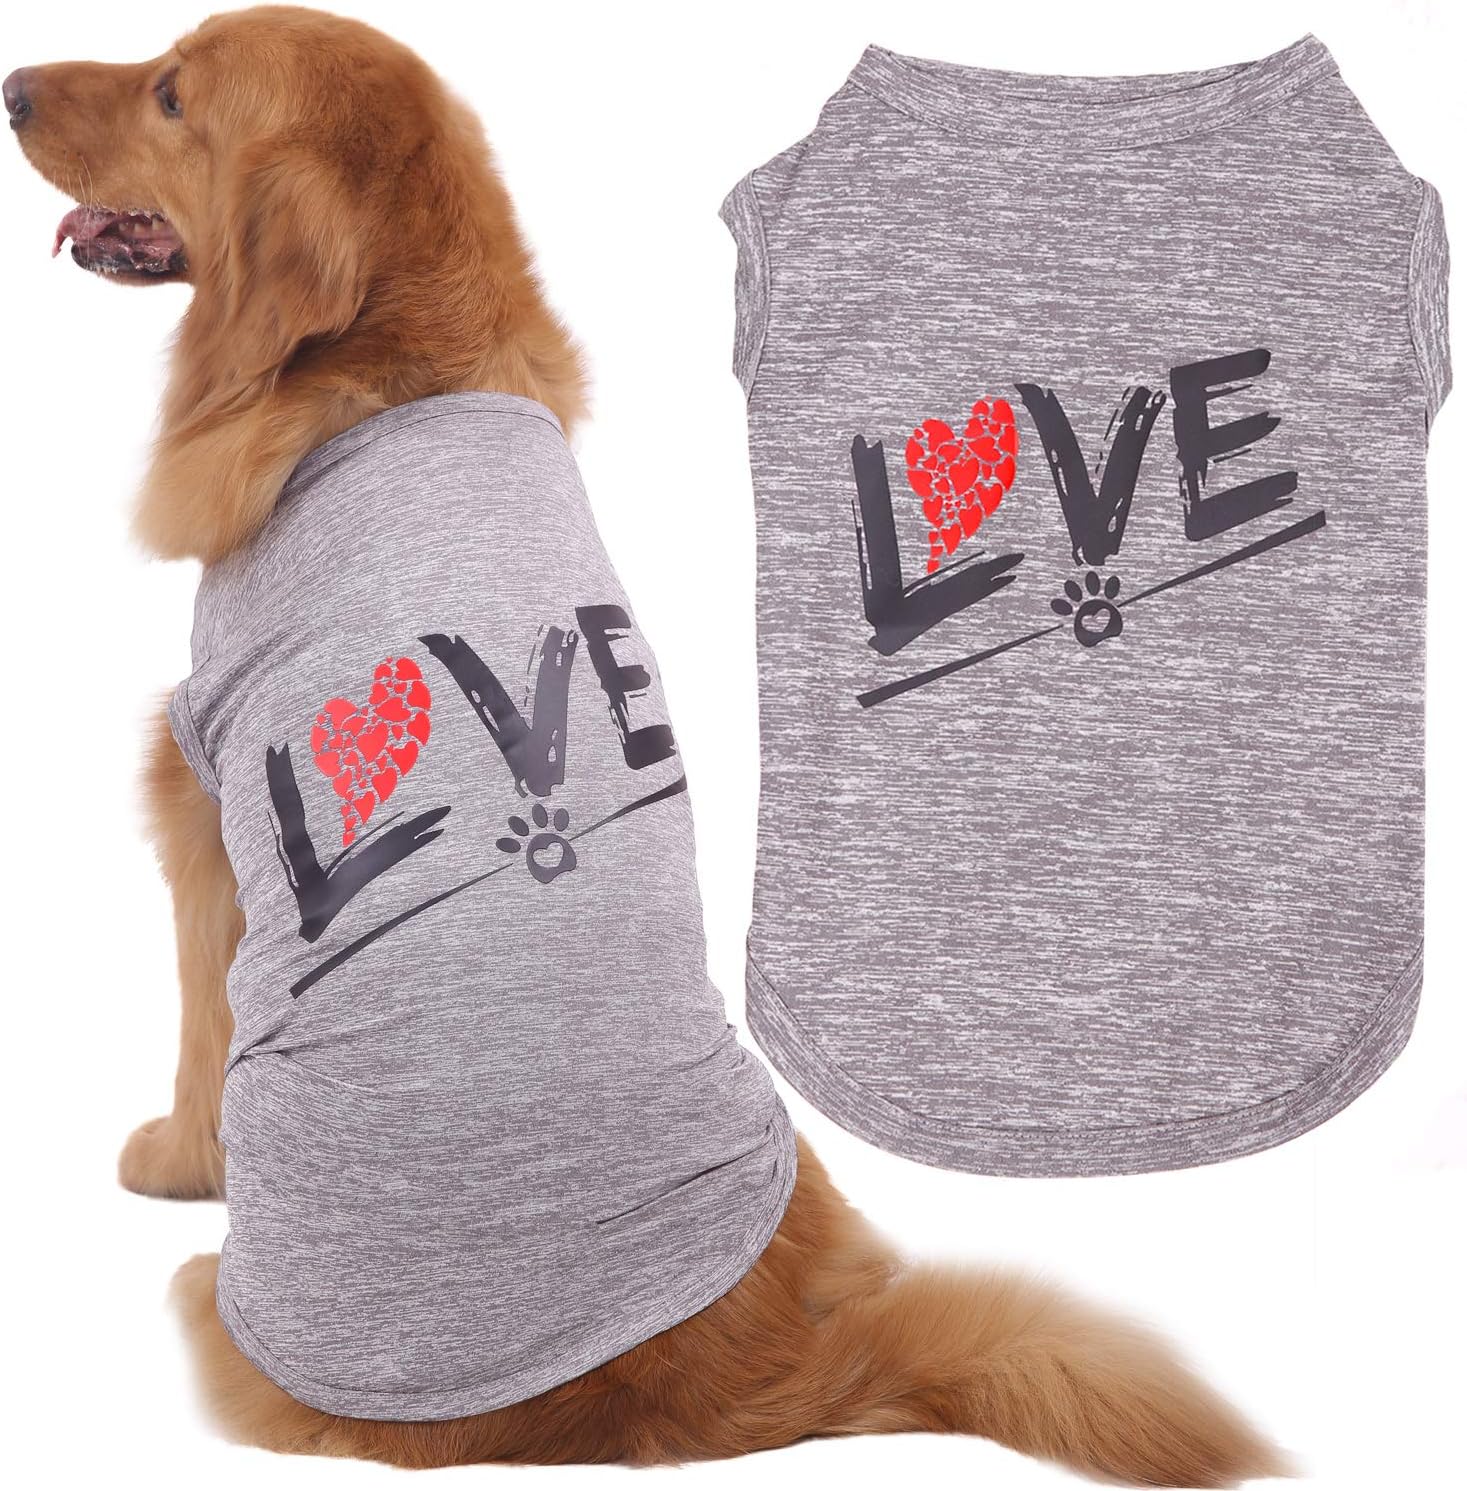 CAISANG Love Dog Shirt